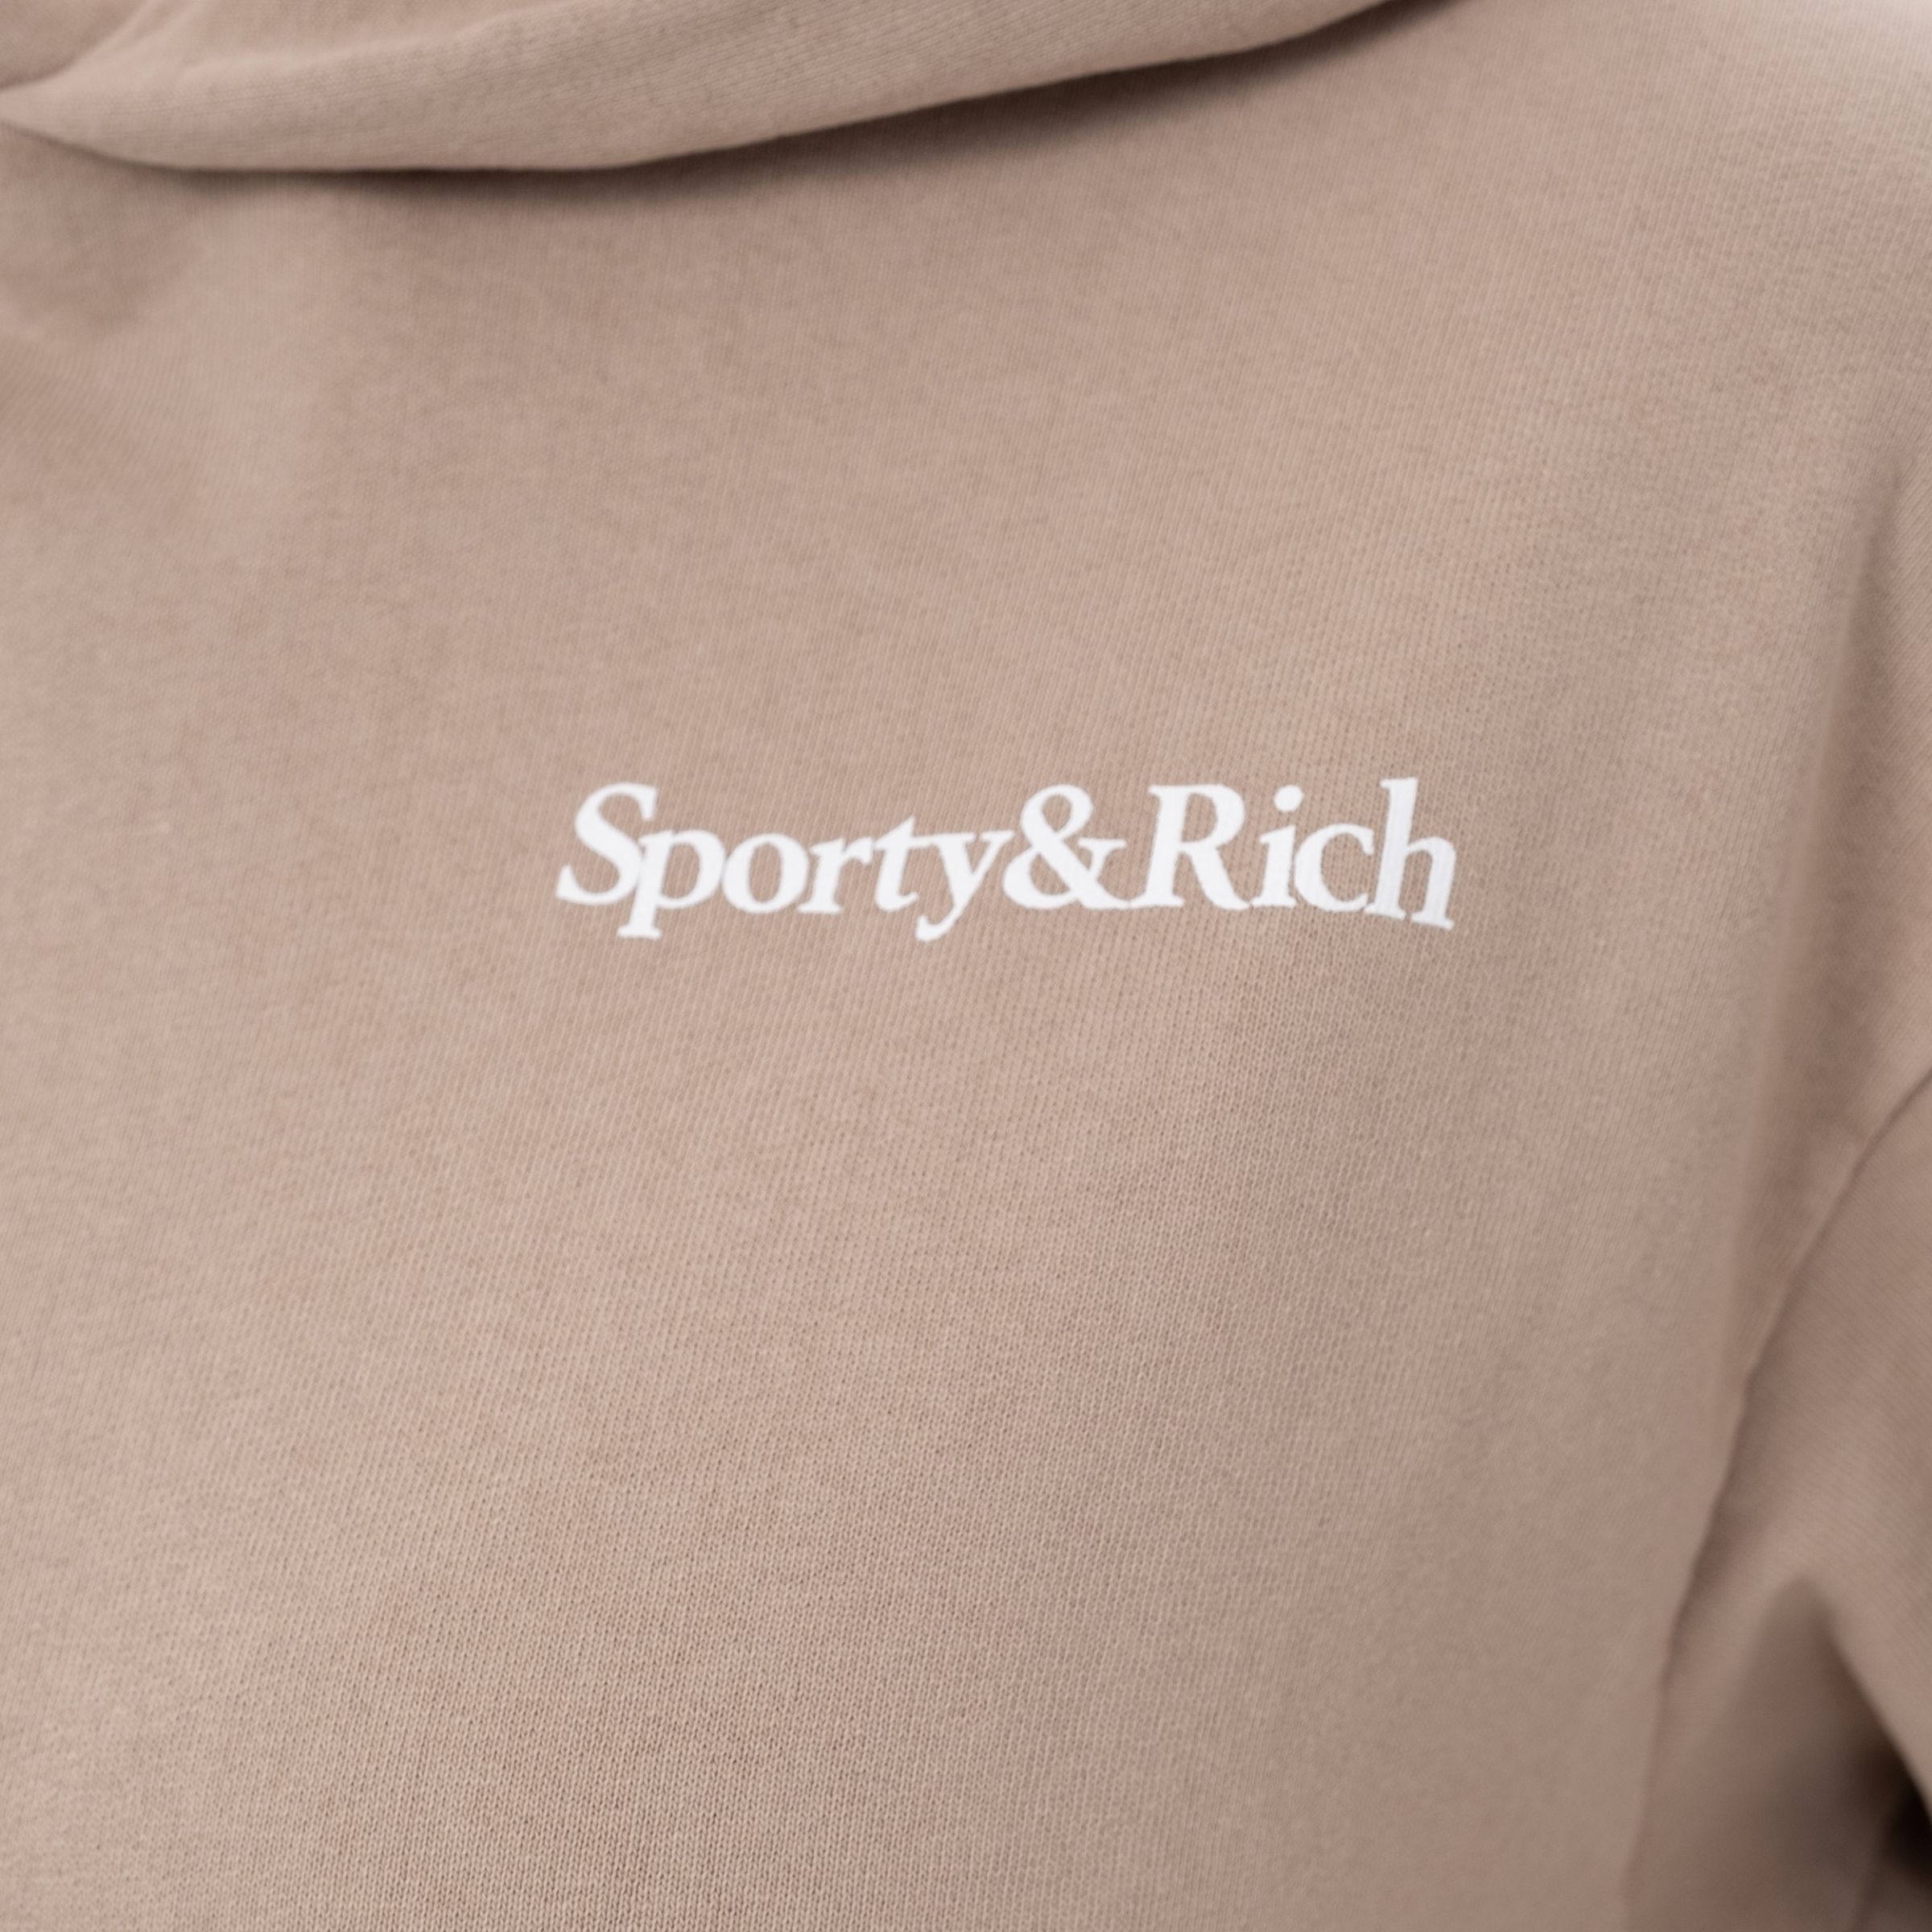 Спортивный костюм Sporty&Rich коричневый